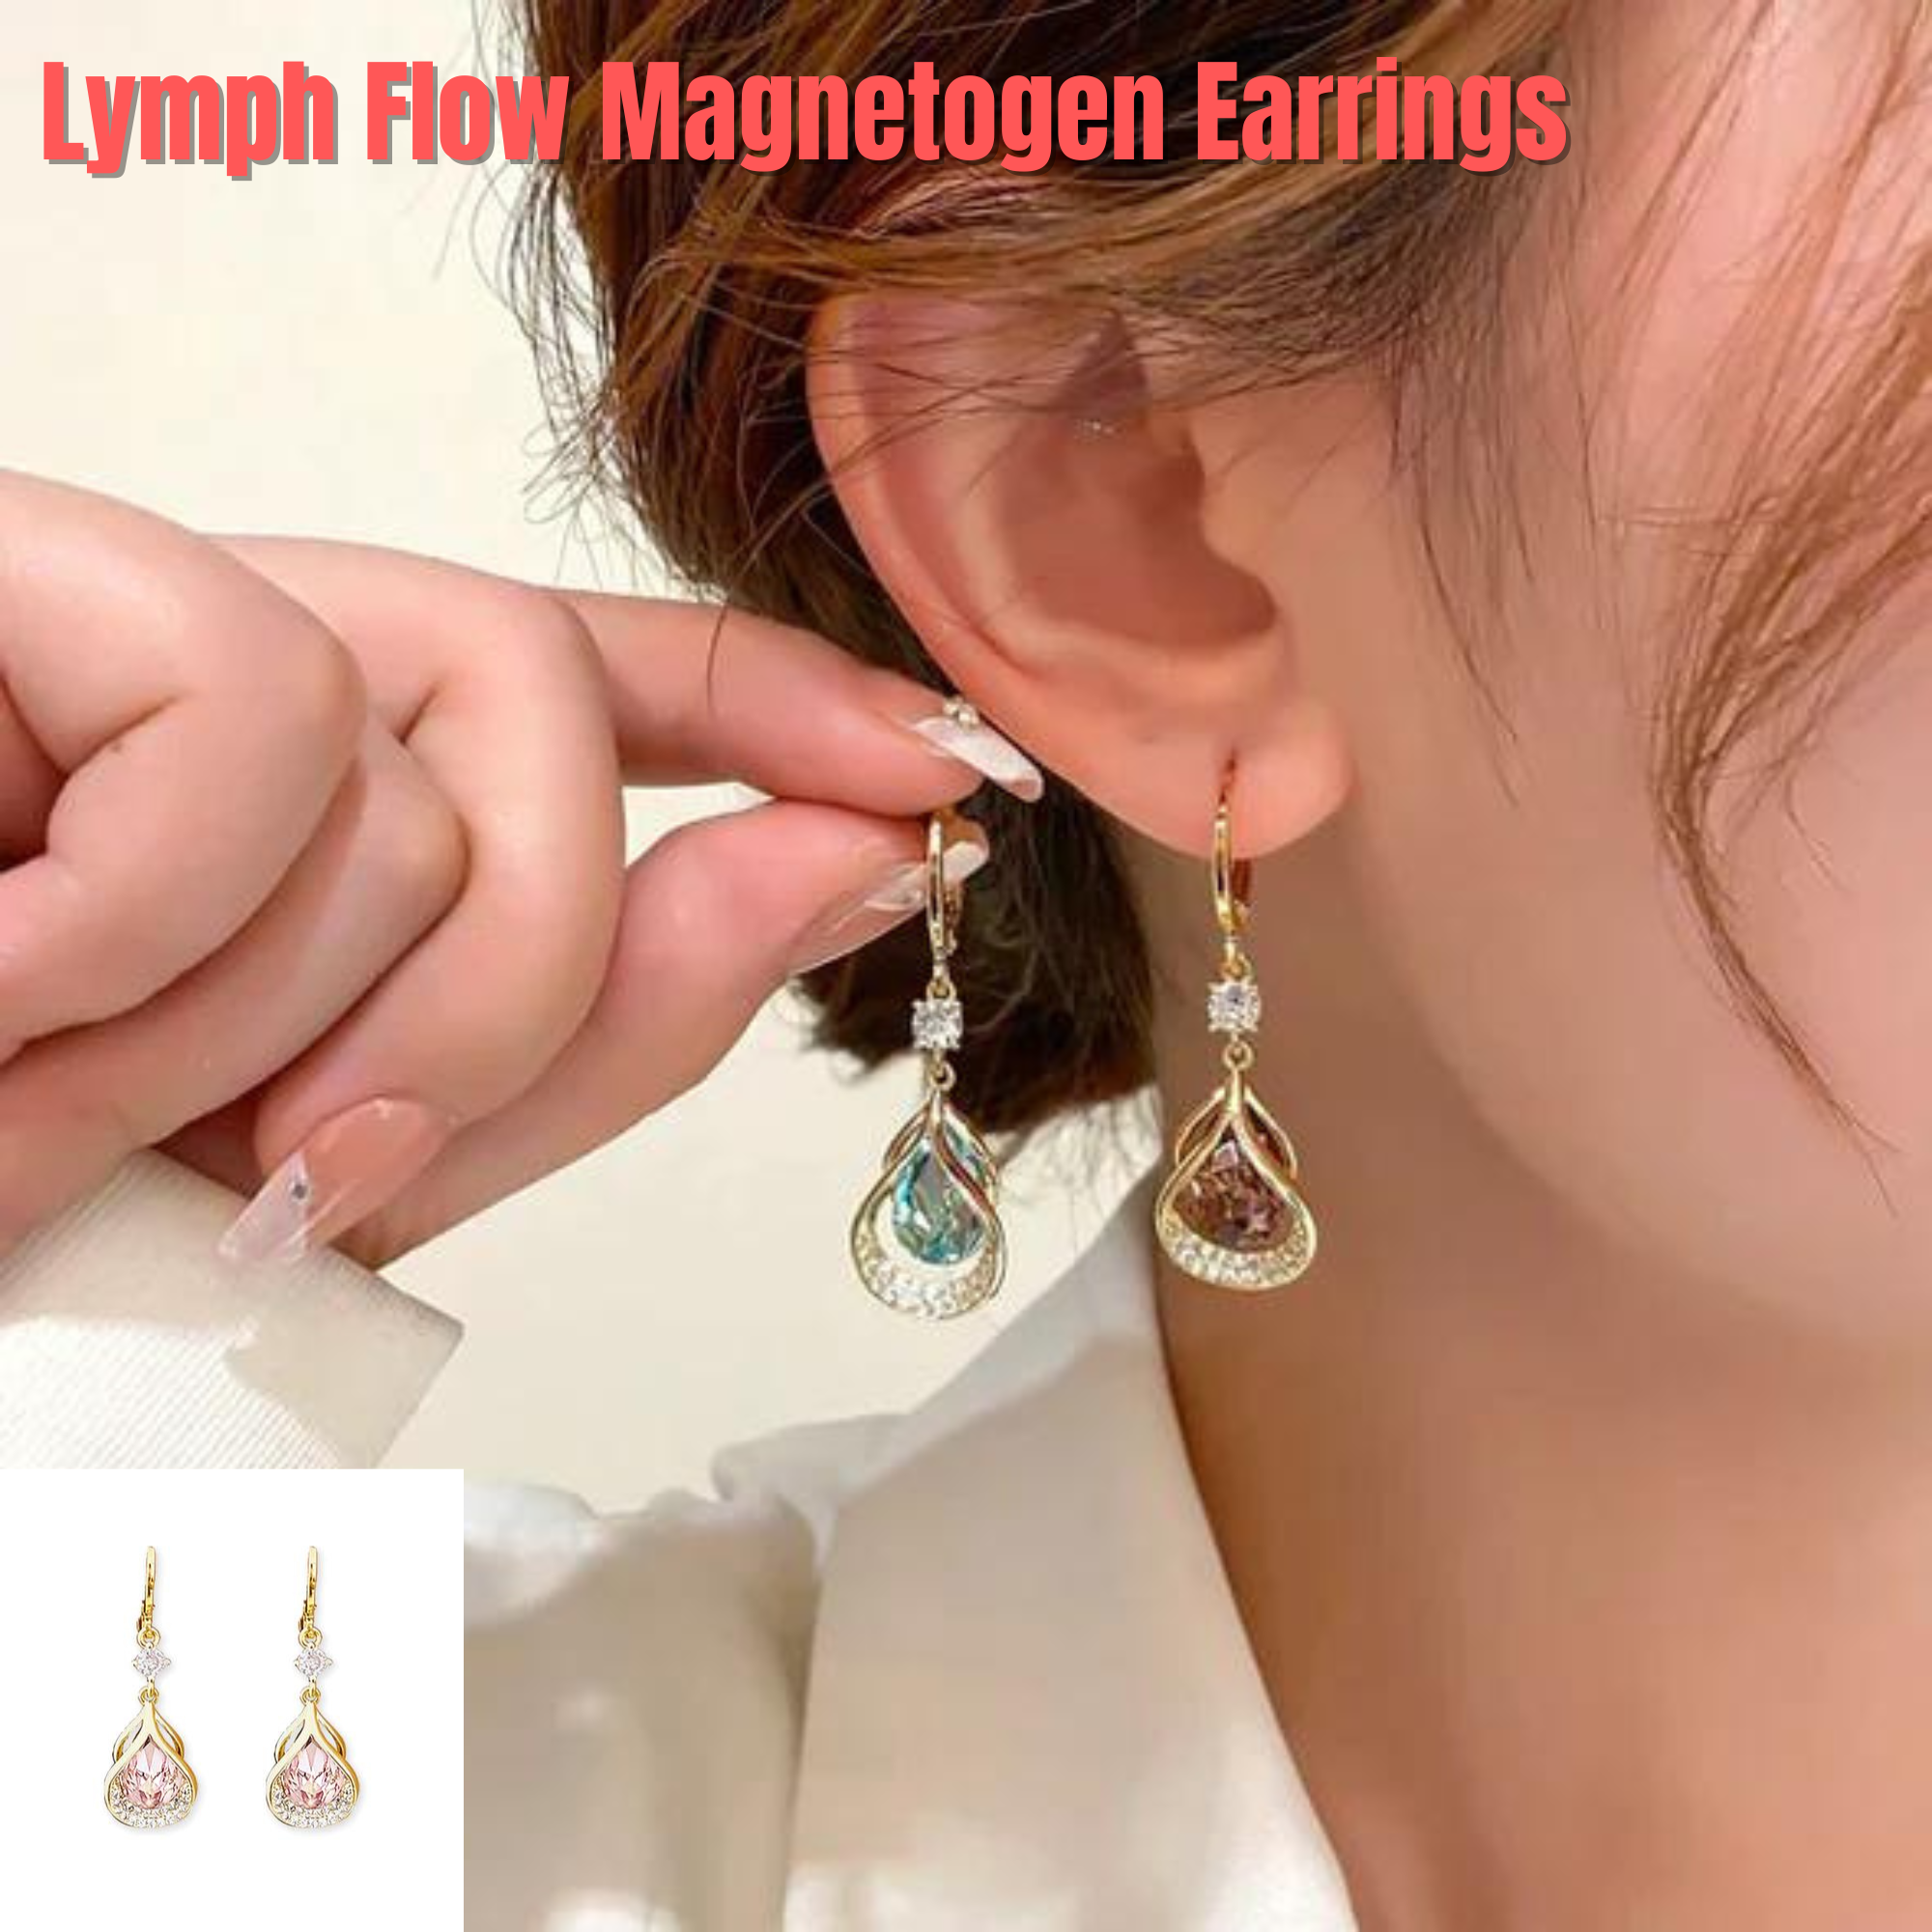 Lymph Flow Magnetogen Earrings